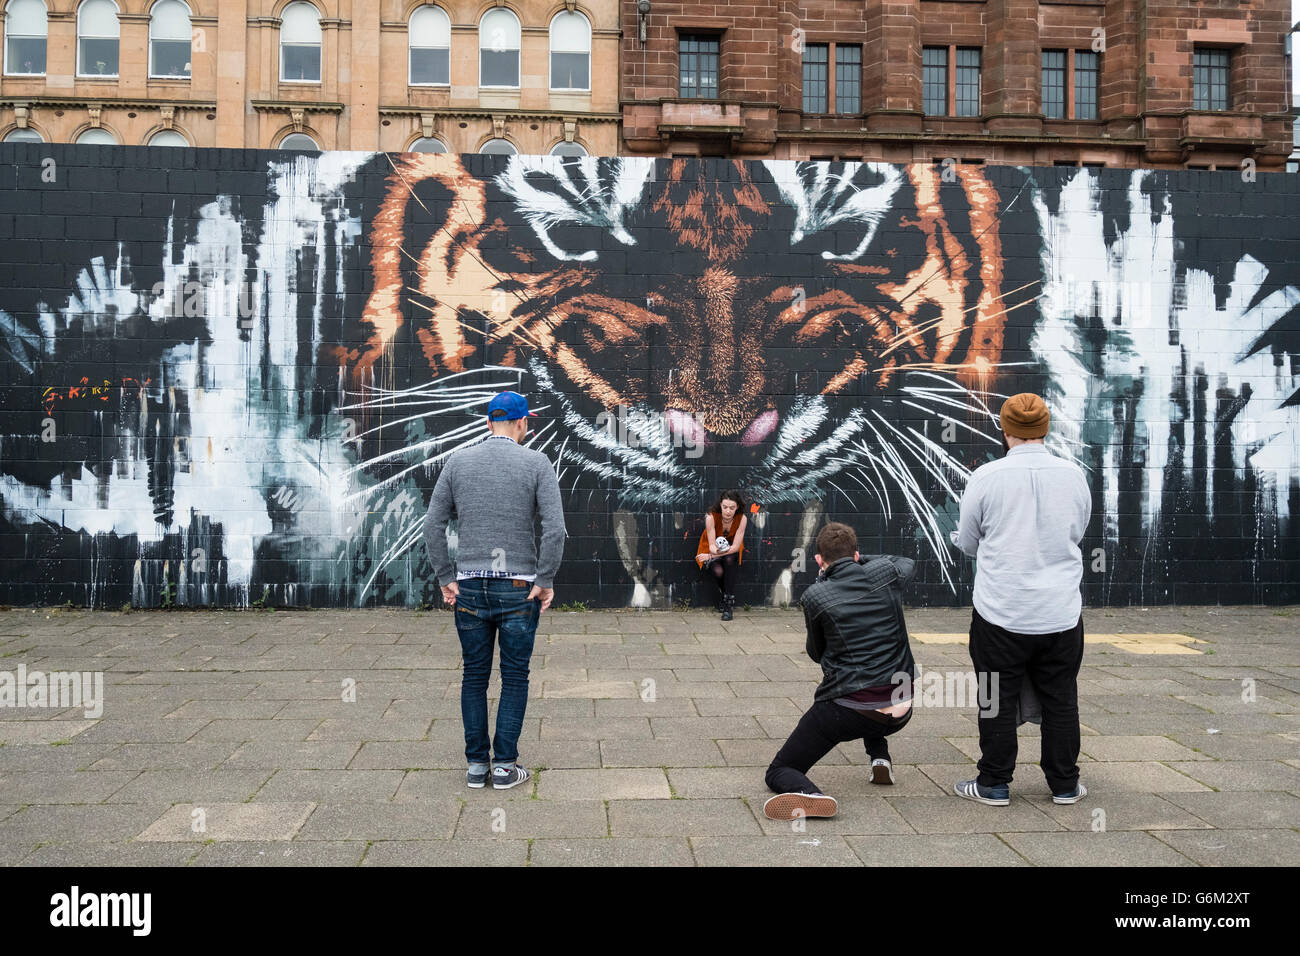 Straßenszene mit Tiger Fototapete, street Art auf Gehweg neben River Clyde in zentralen Glasgow, Schottland, Vereinigtes Königreich Stockfoto